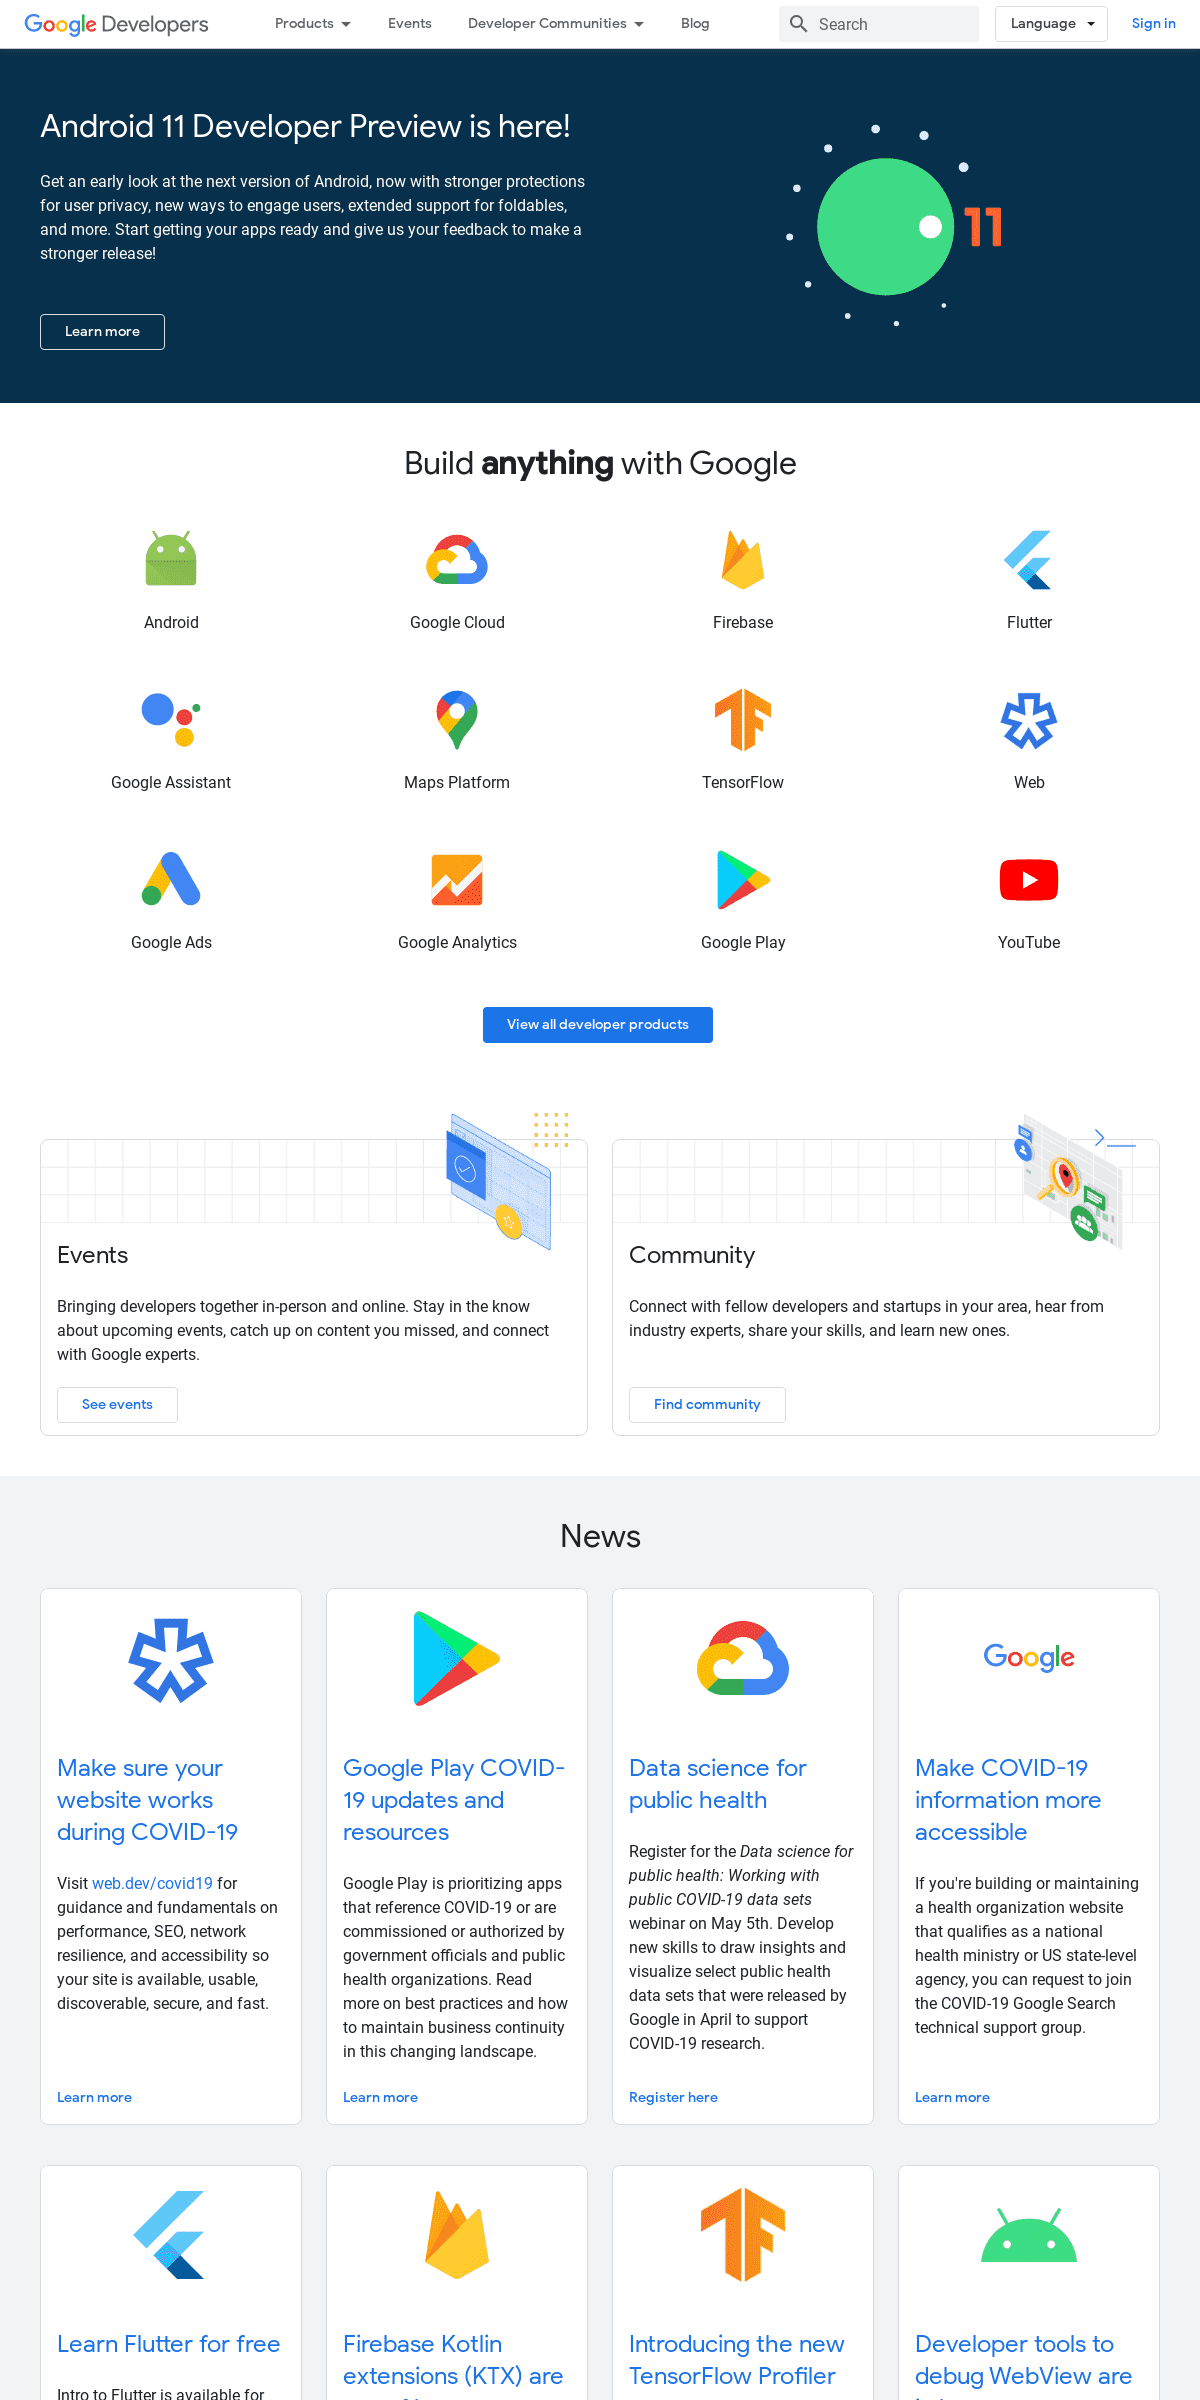 A complete backup of developers.google.com